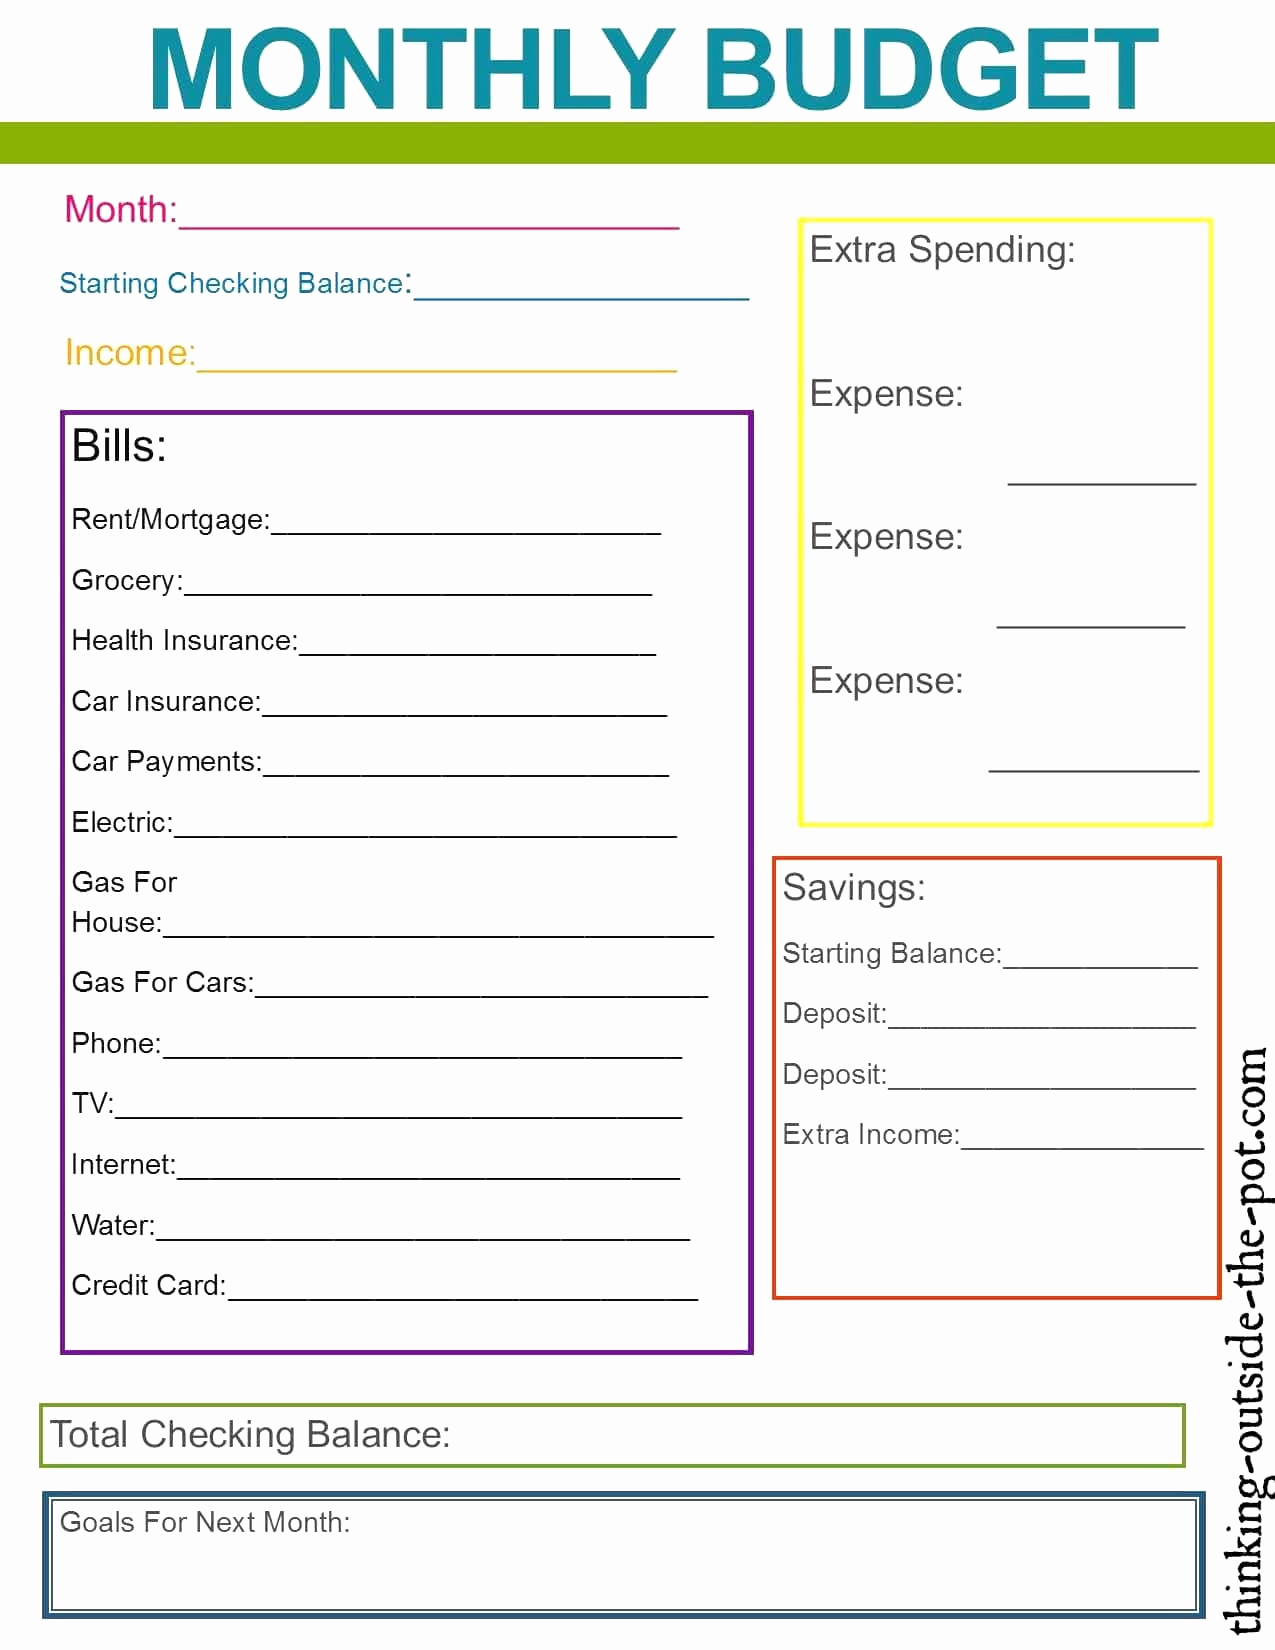 budget spending plan template